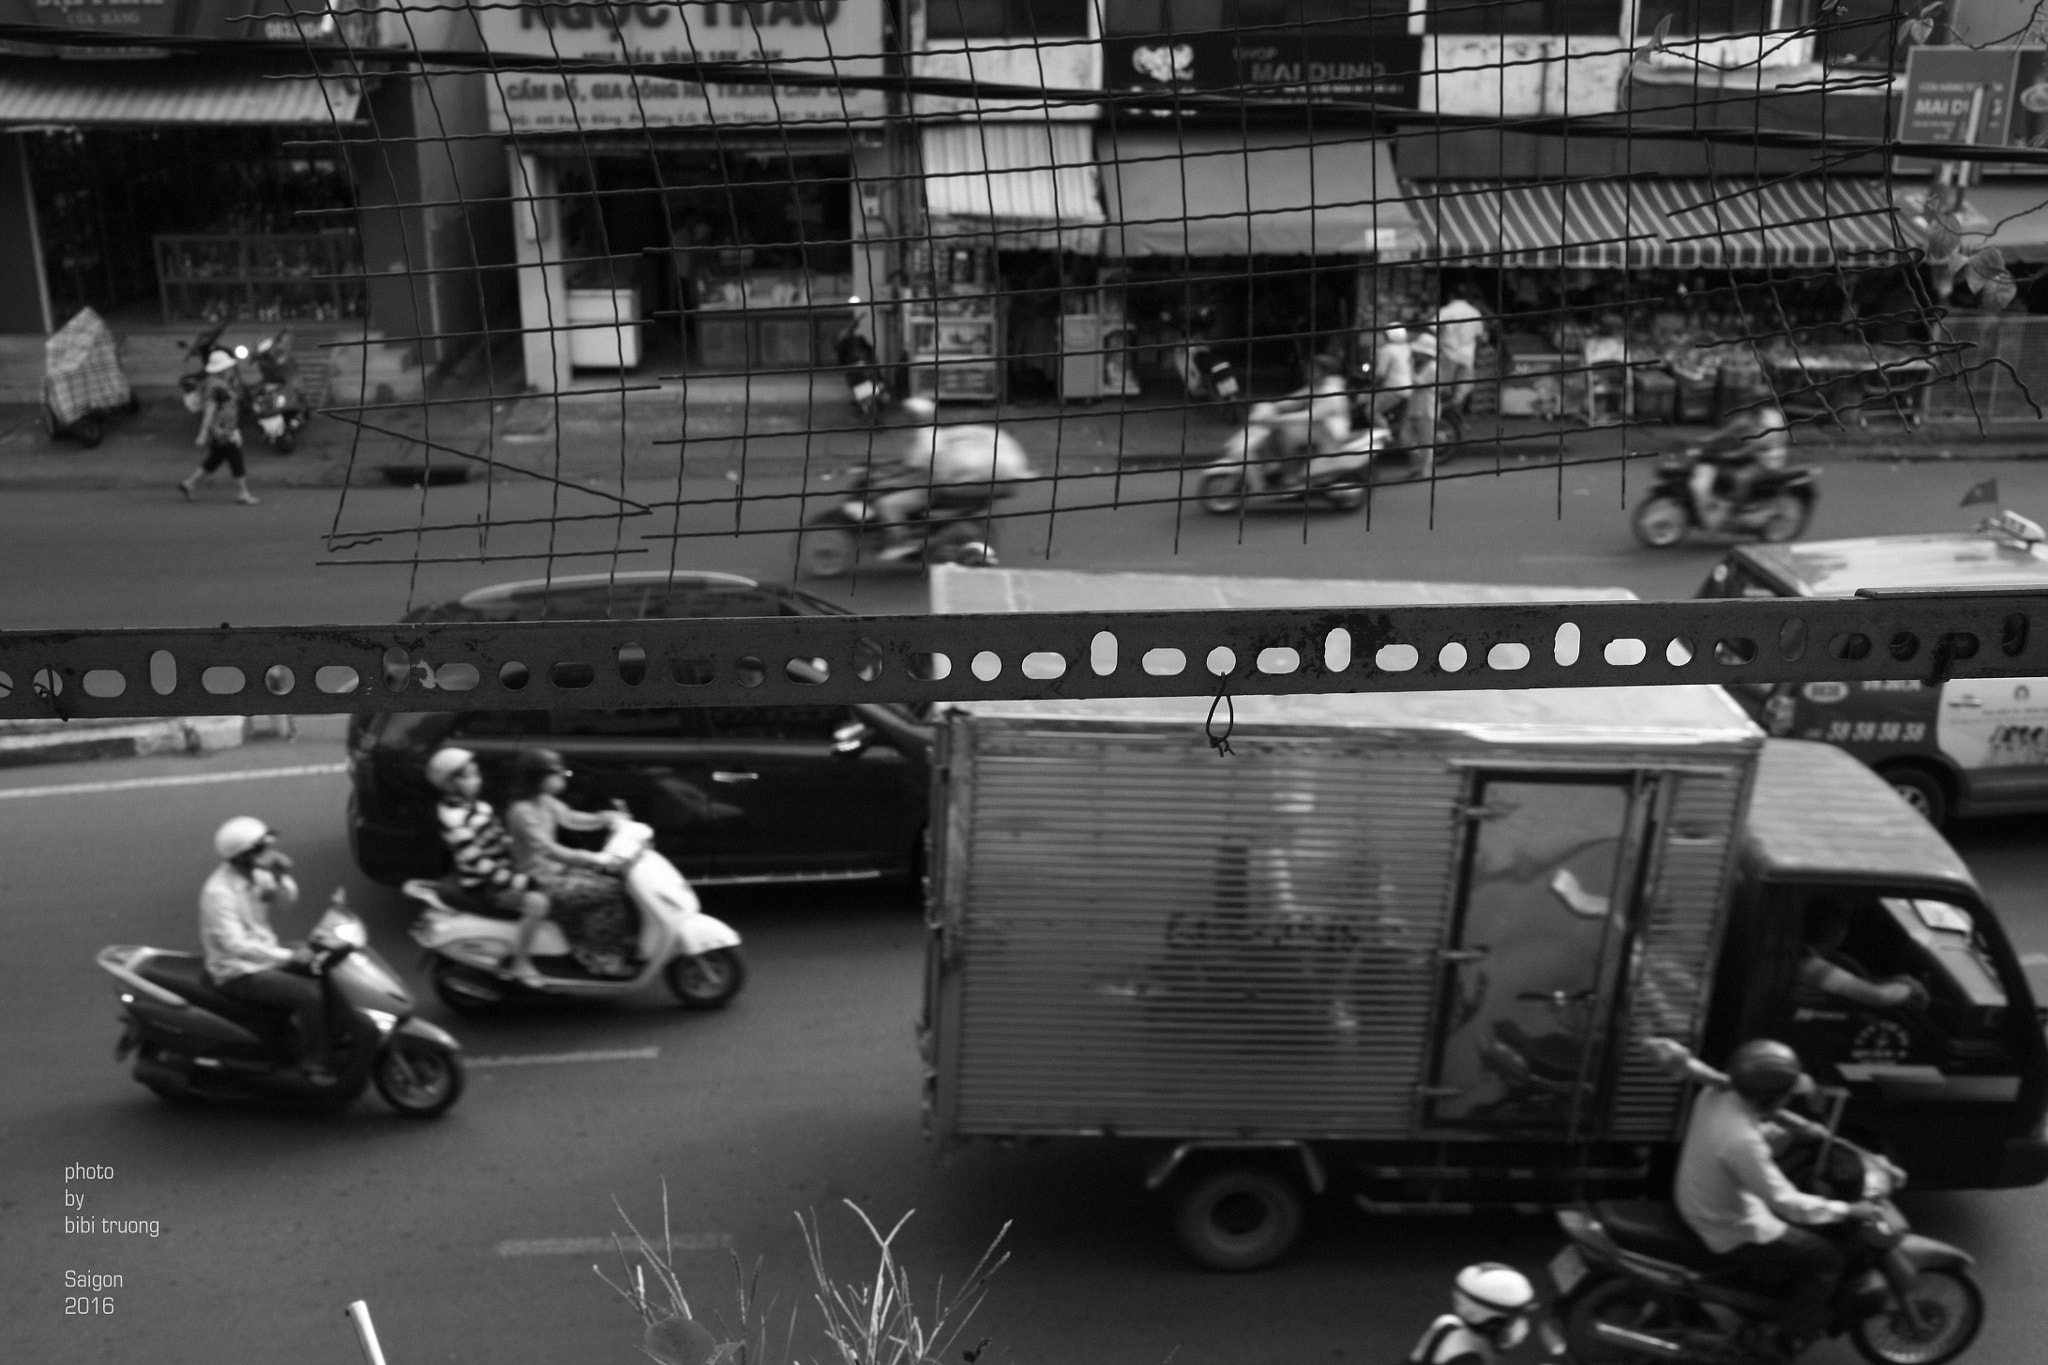 Canon EOS 5D sample photo. Saigon photography